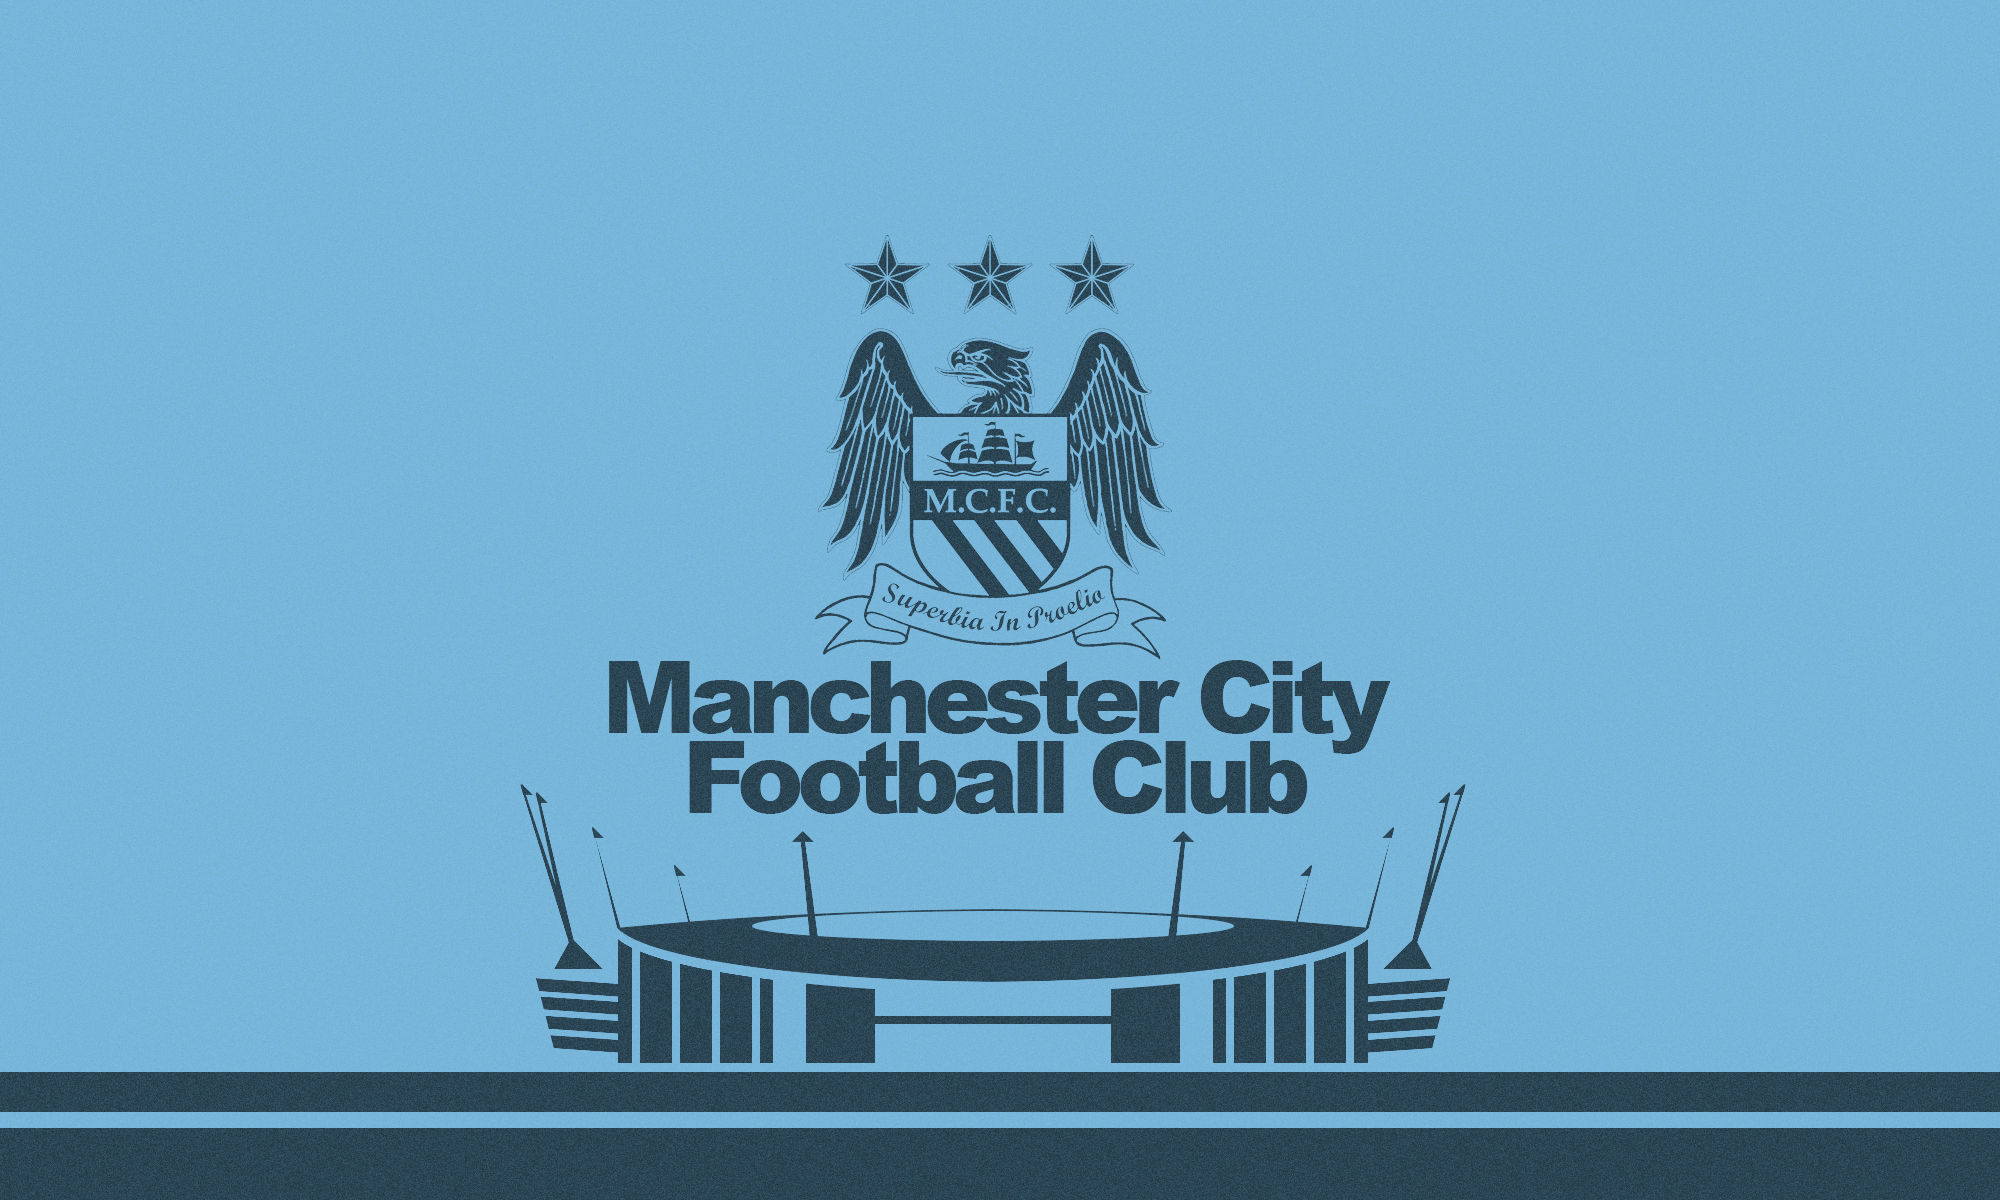 Hình nền Manchester City là sự lựa chọn hoàn hảo cho fan hâm mộ của CLB. Sành điệu và đẹp mắt, những hình nền này sẽ giúp bạn truyền tải niềm đam mê và sự ủng hộ tuyệt đối đối với Man City.